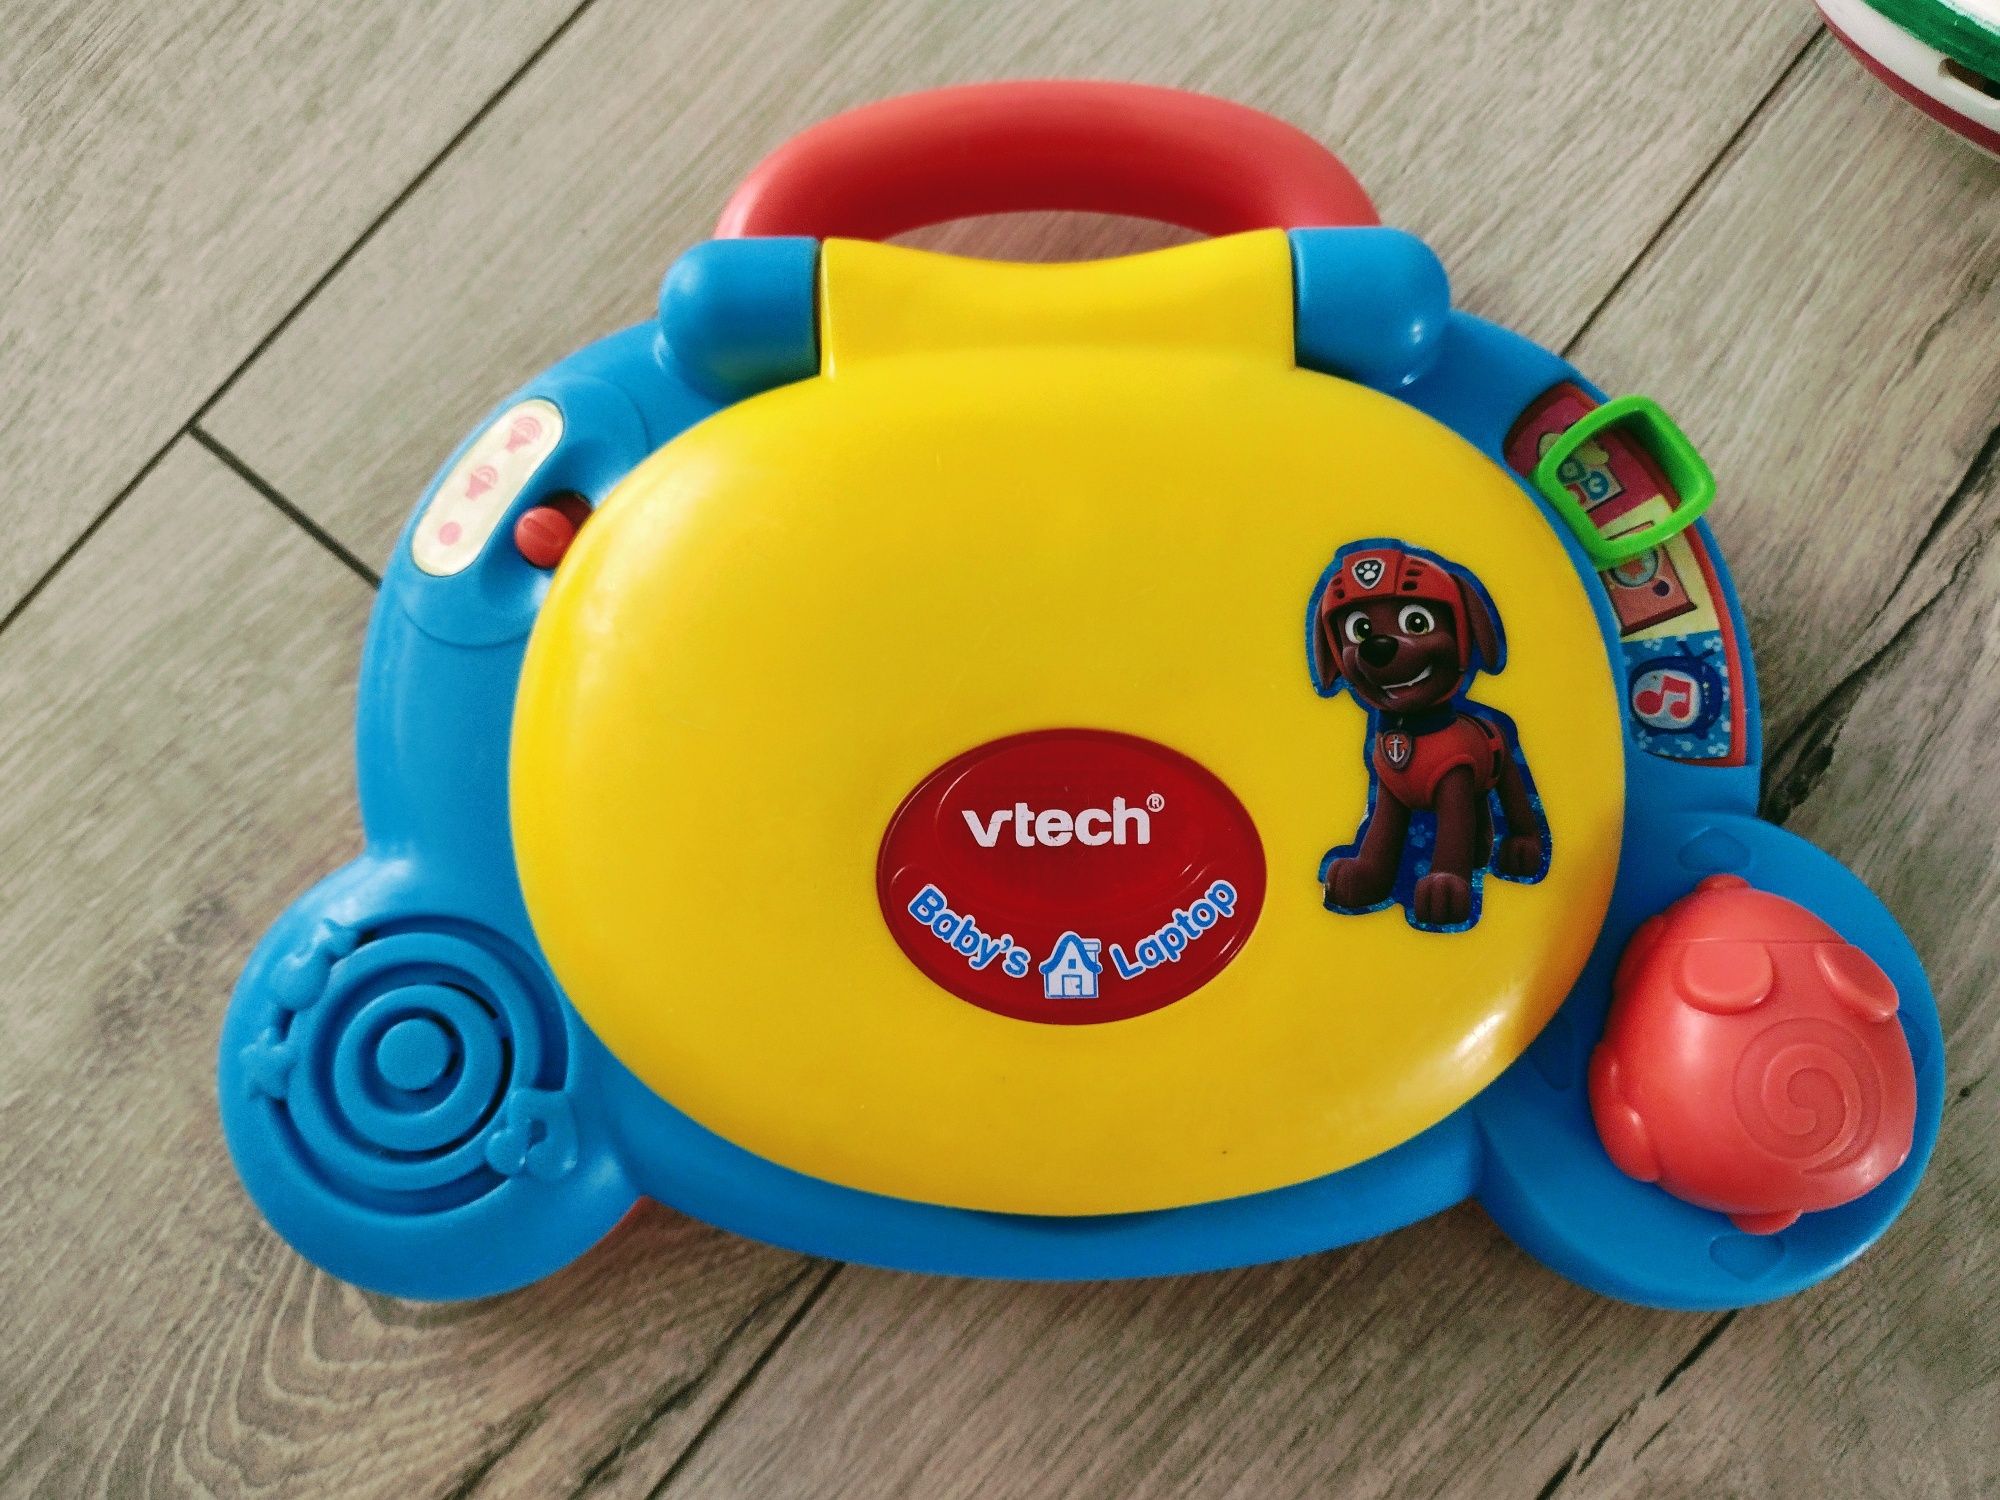 Zabawka edukacyjna - laptop dziecięcy

VTECH 0738 interaktywny laptop